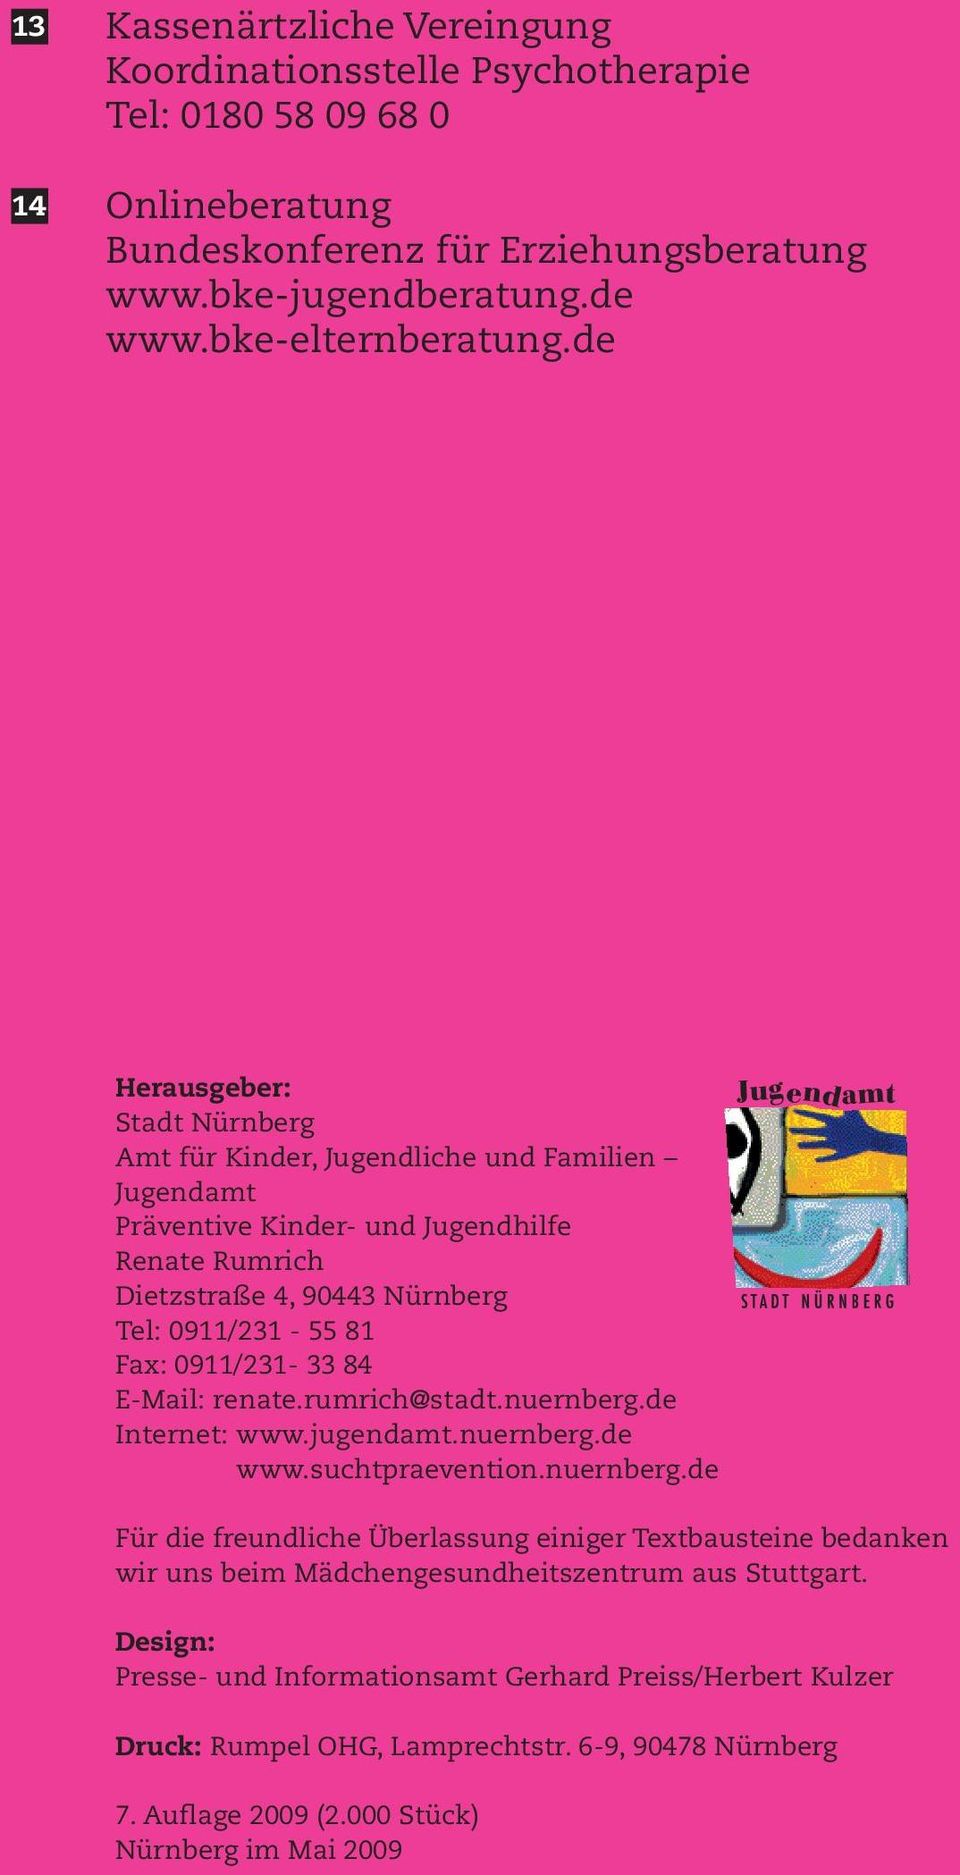 84 E-Mail: renate.rumrich@stadt.nuernberg.de Internet: www.jugendamt.nuernberg.de Internet: www.suchtpraevention.nuernberg.de Für die freundliche Überlassung einiger Textbausteine bedanken wir uns beim Mädchengesundheitszentrum aus Stuttgart.